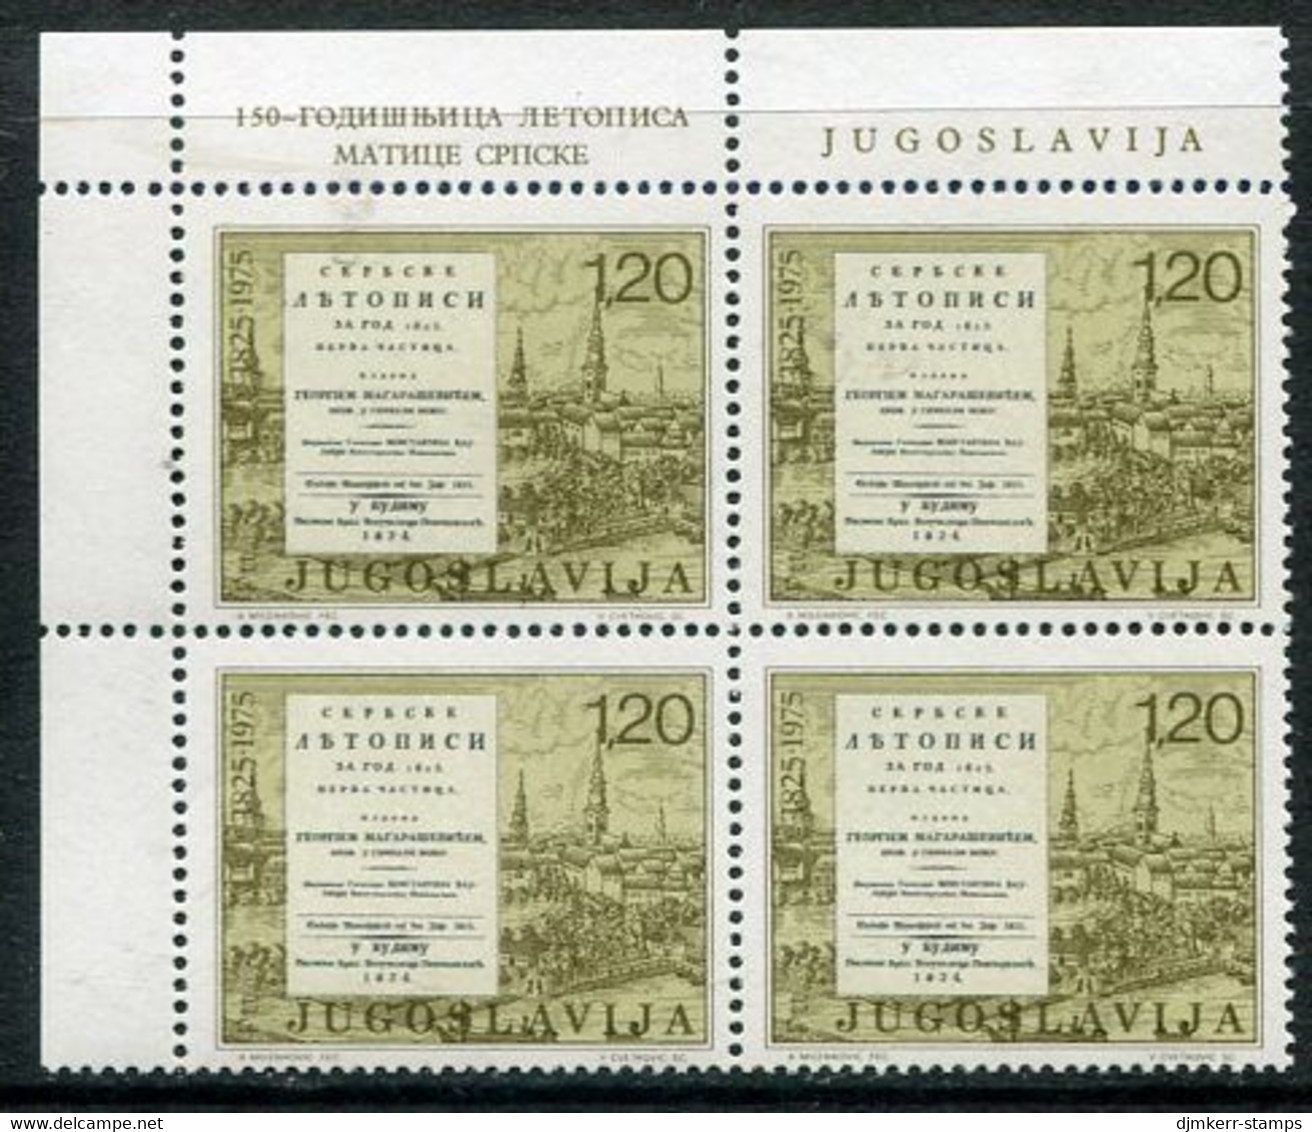 YUGOSLAVIA 1975 Matica Srpska Journal Block Of 4 MNH / **.  Michel 1584A - Ongebruikt